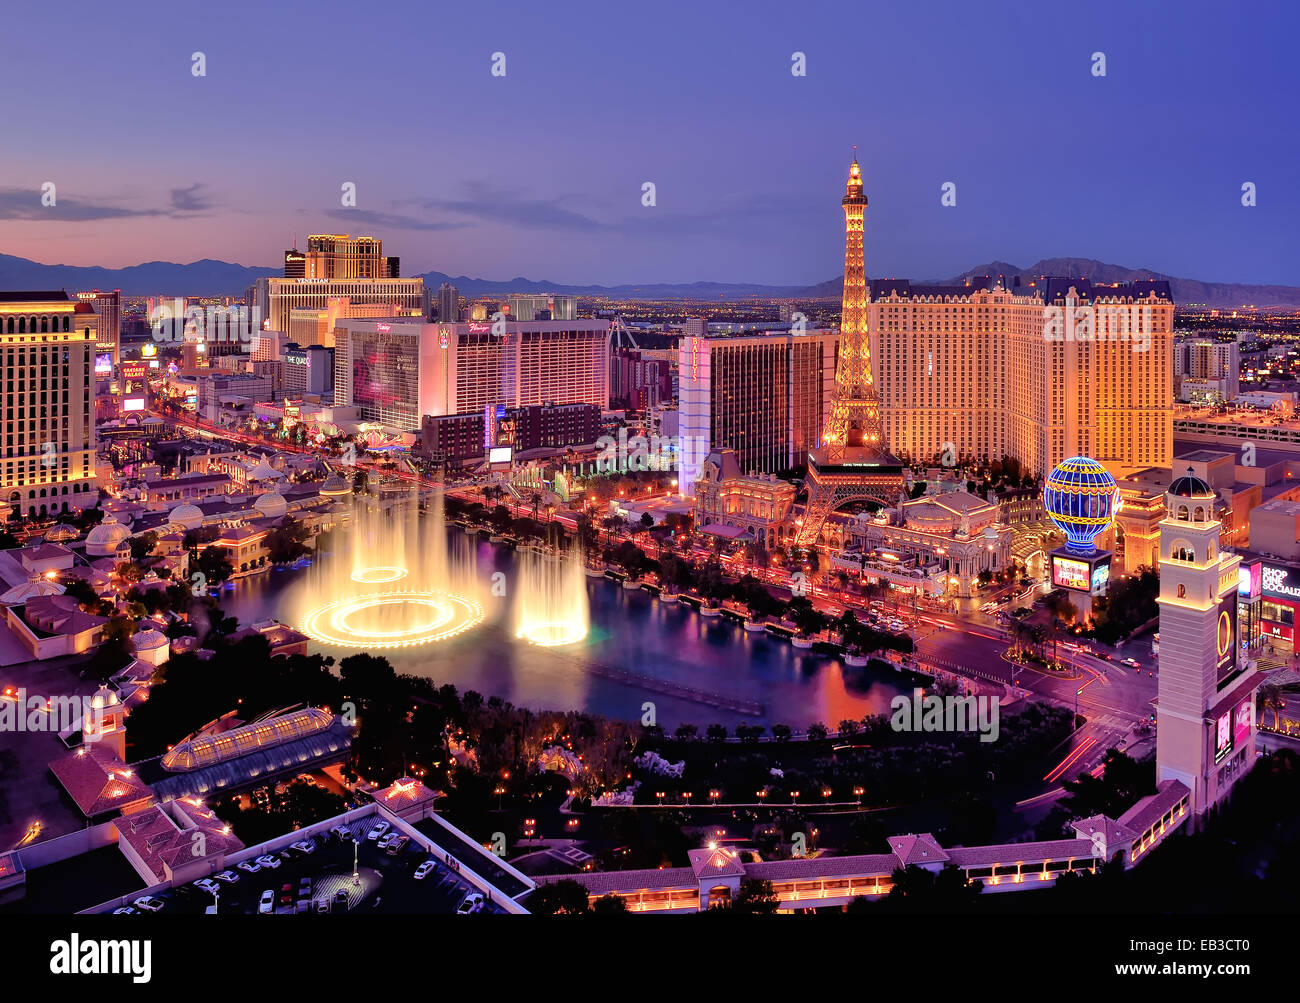 Skyline bei Nacht mit Wasserfontänen des Bellagio Hotels, Las Vegas, Nevada, USA Stockfoto